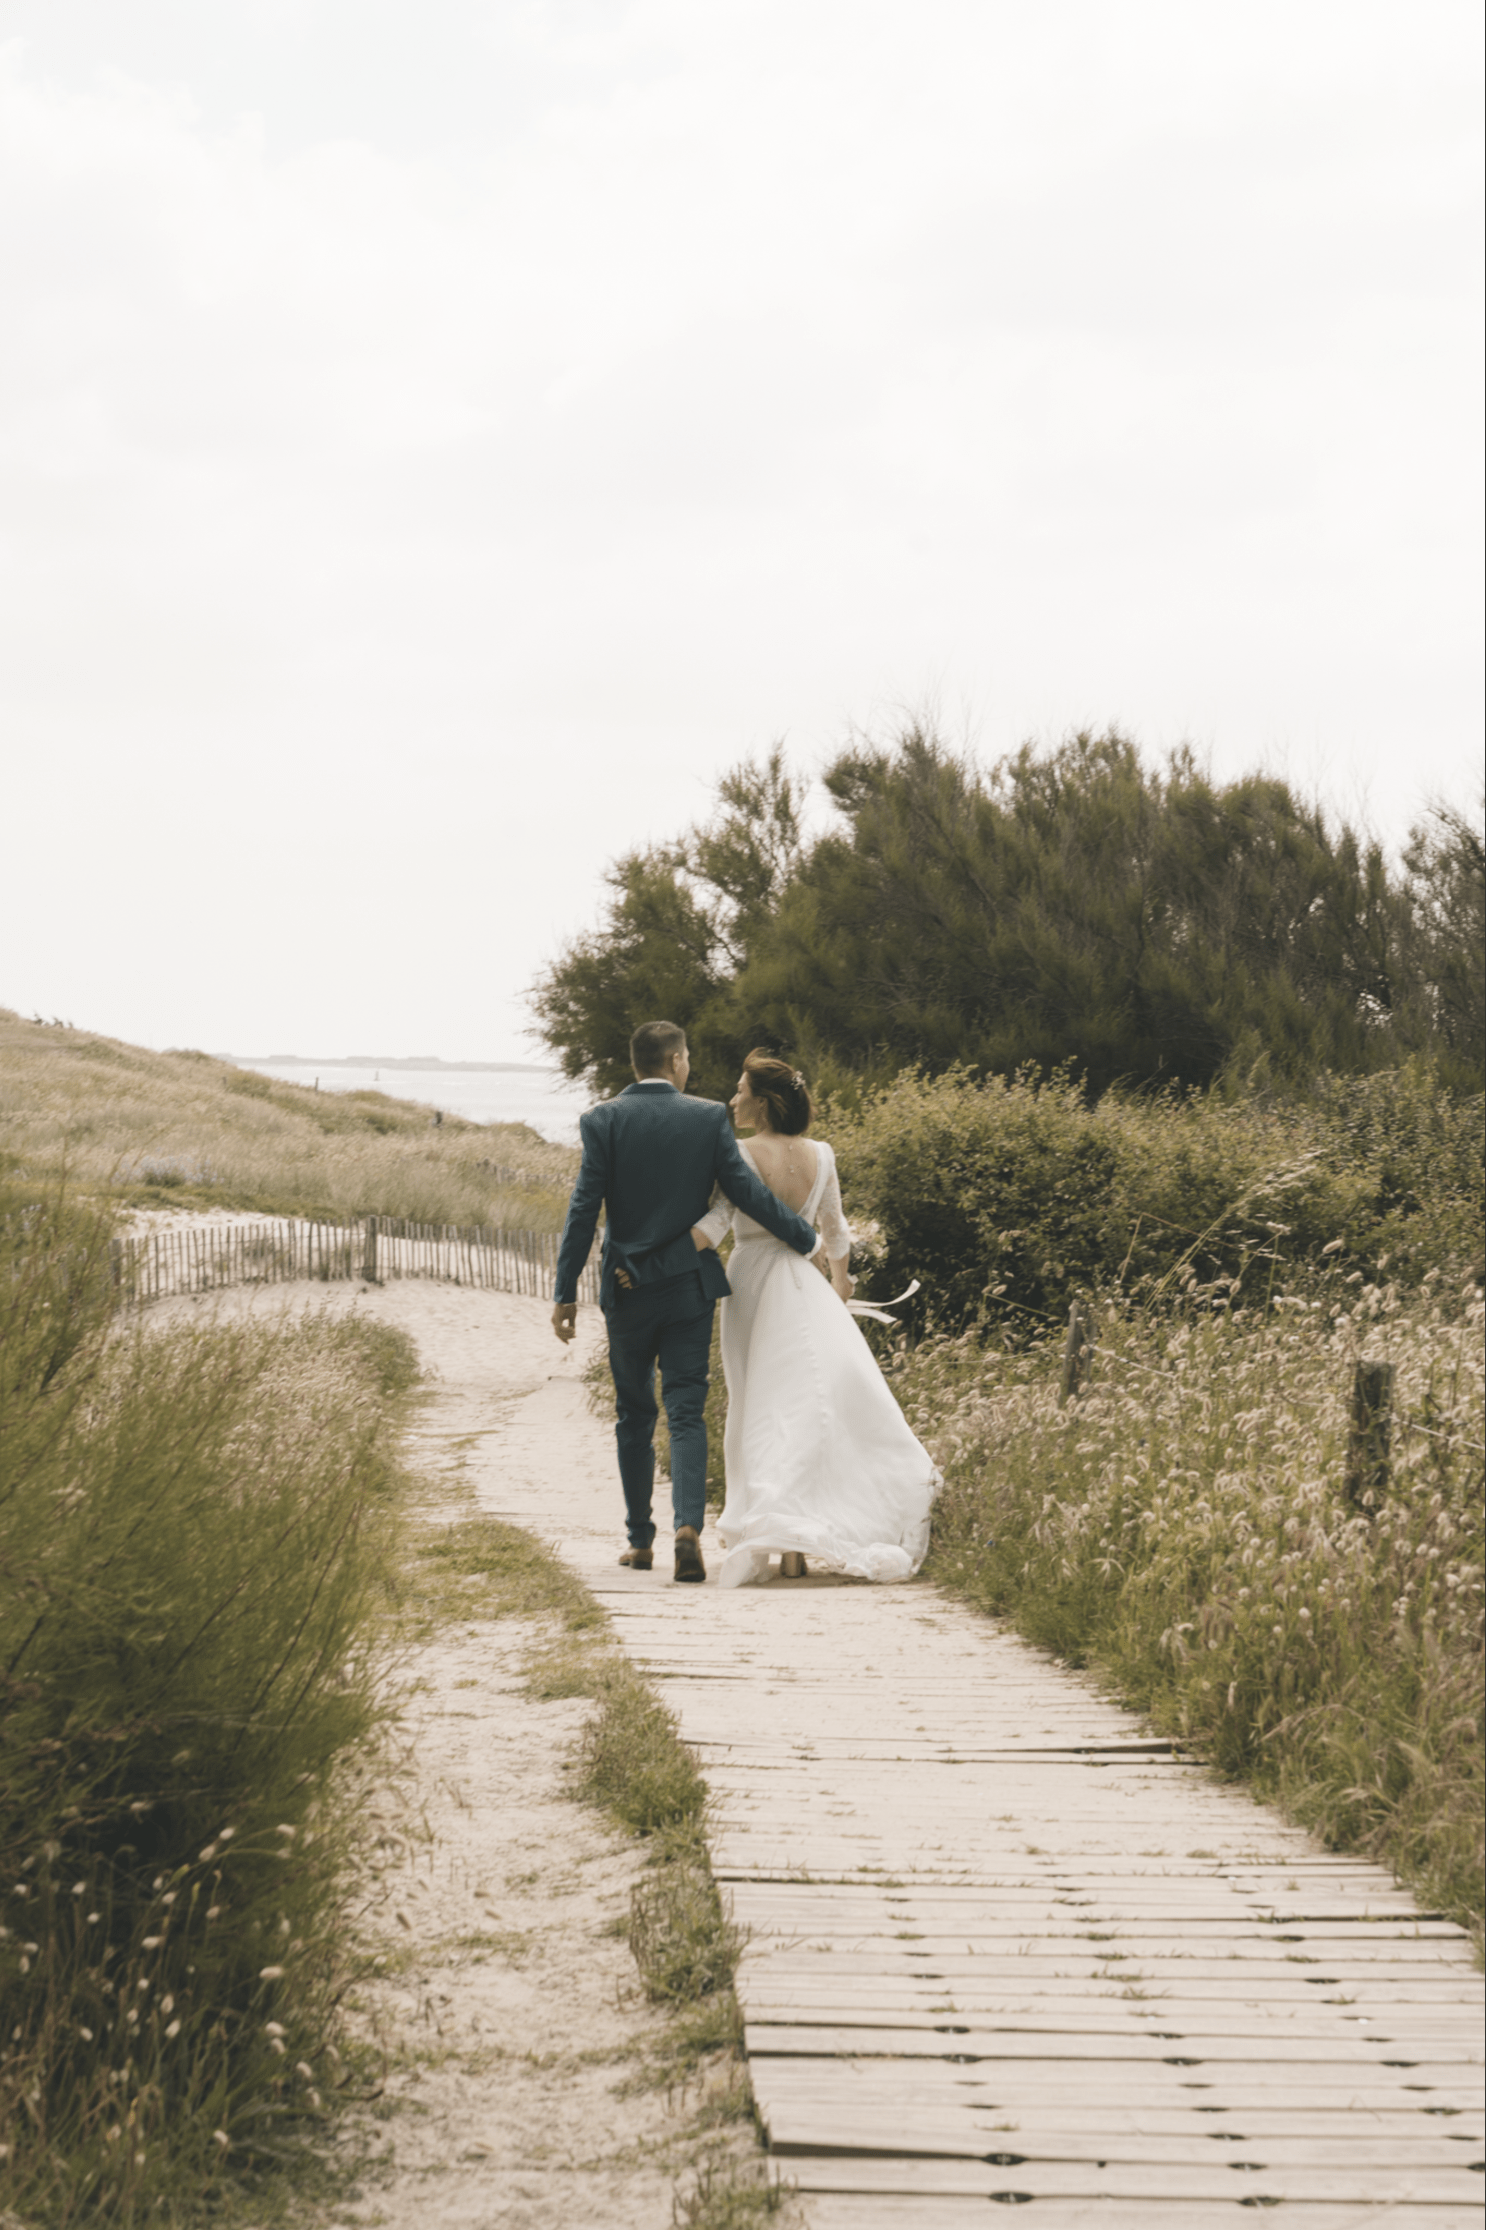 Mariage au bord de mer à Larmor plage